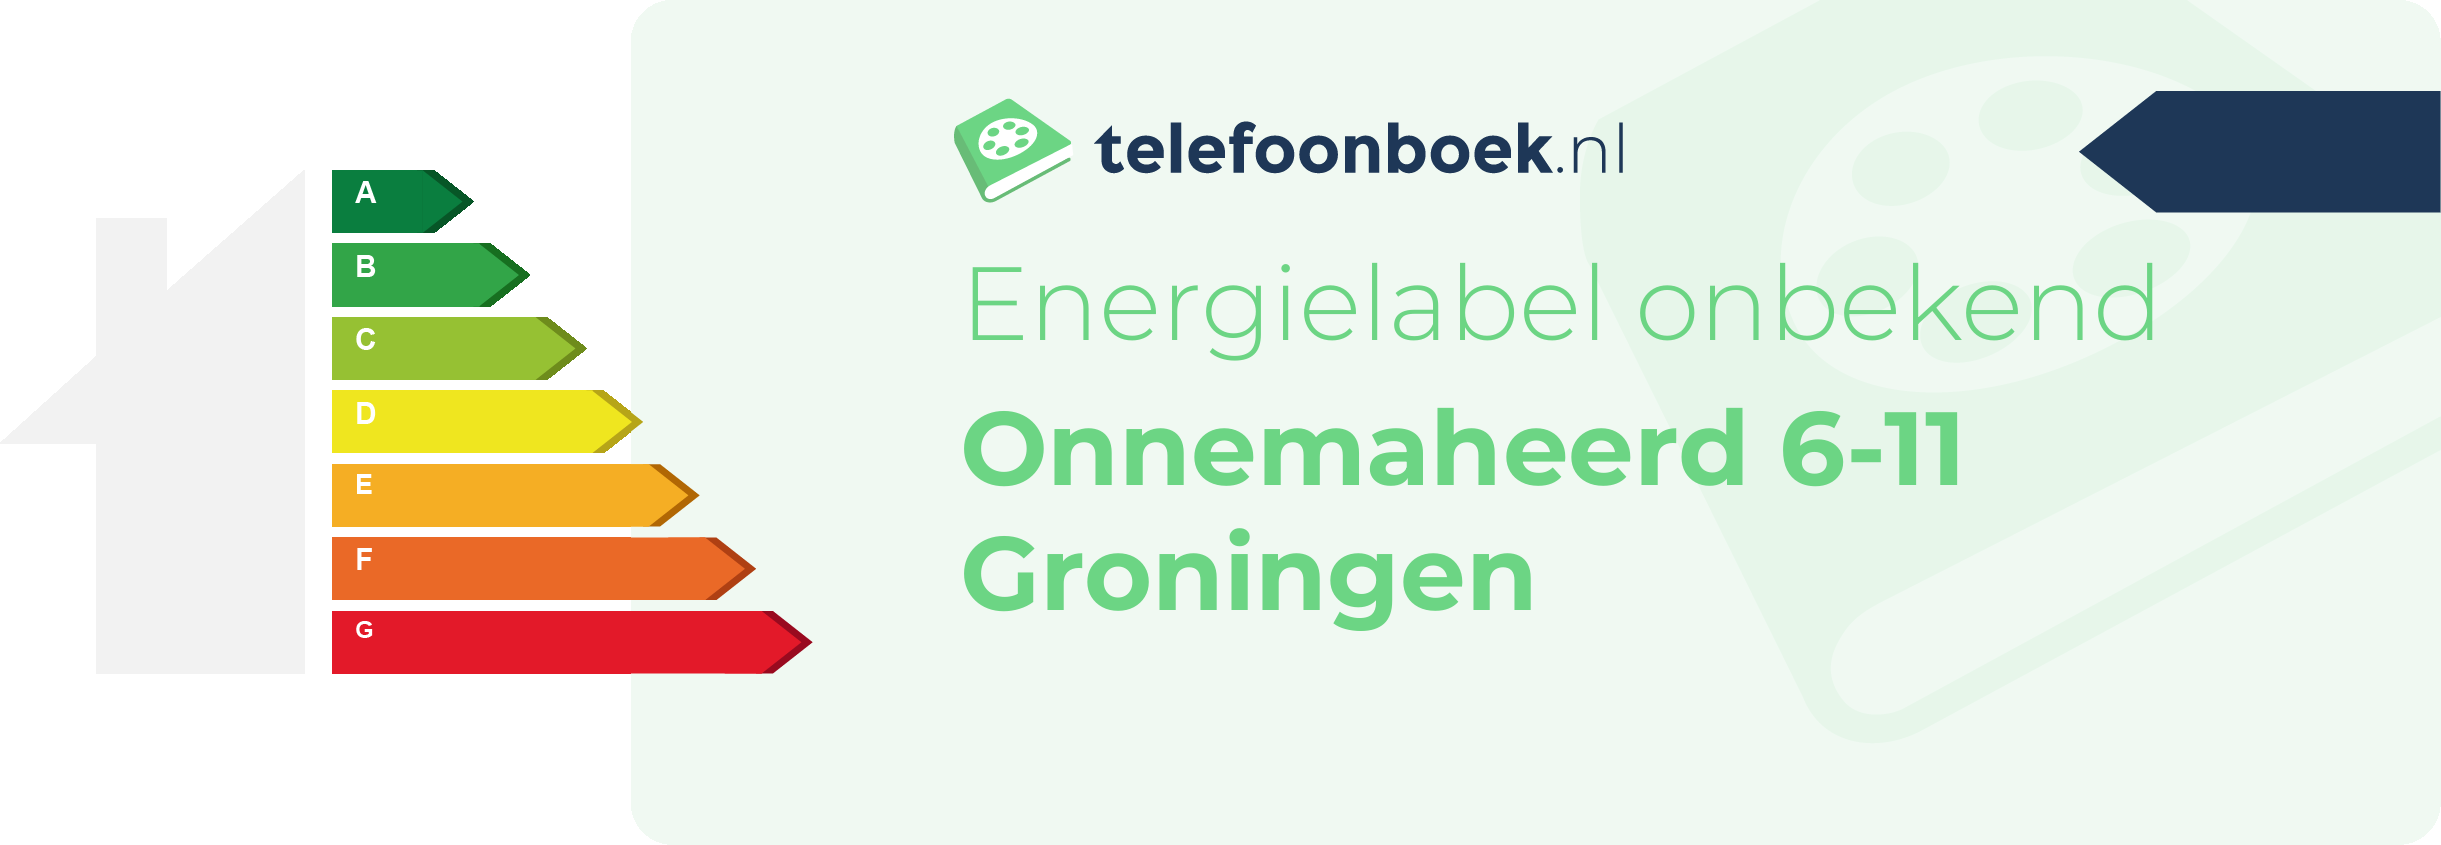 Energielabel Onnemaheerd 6-11 Groningen